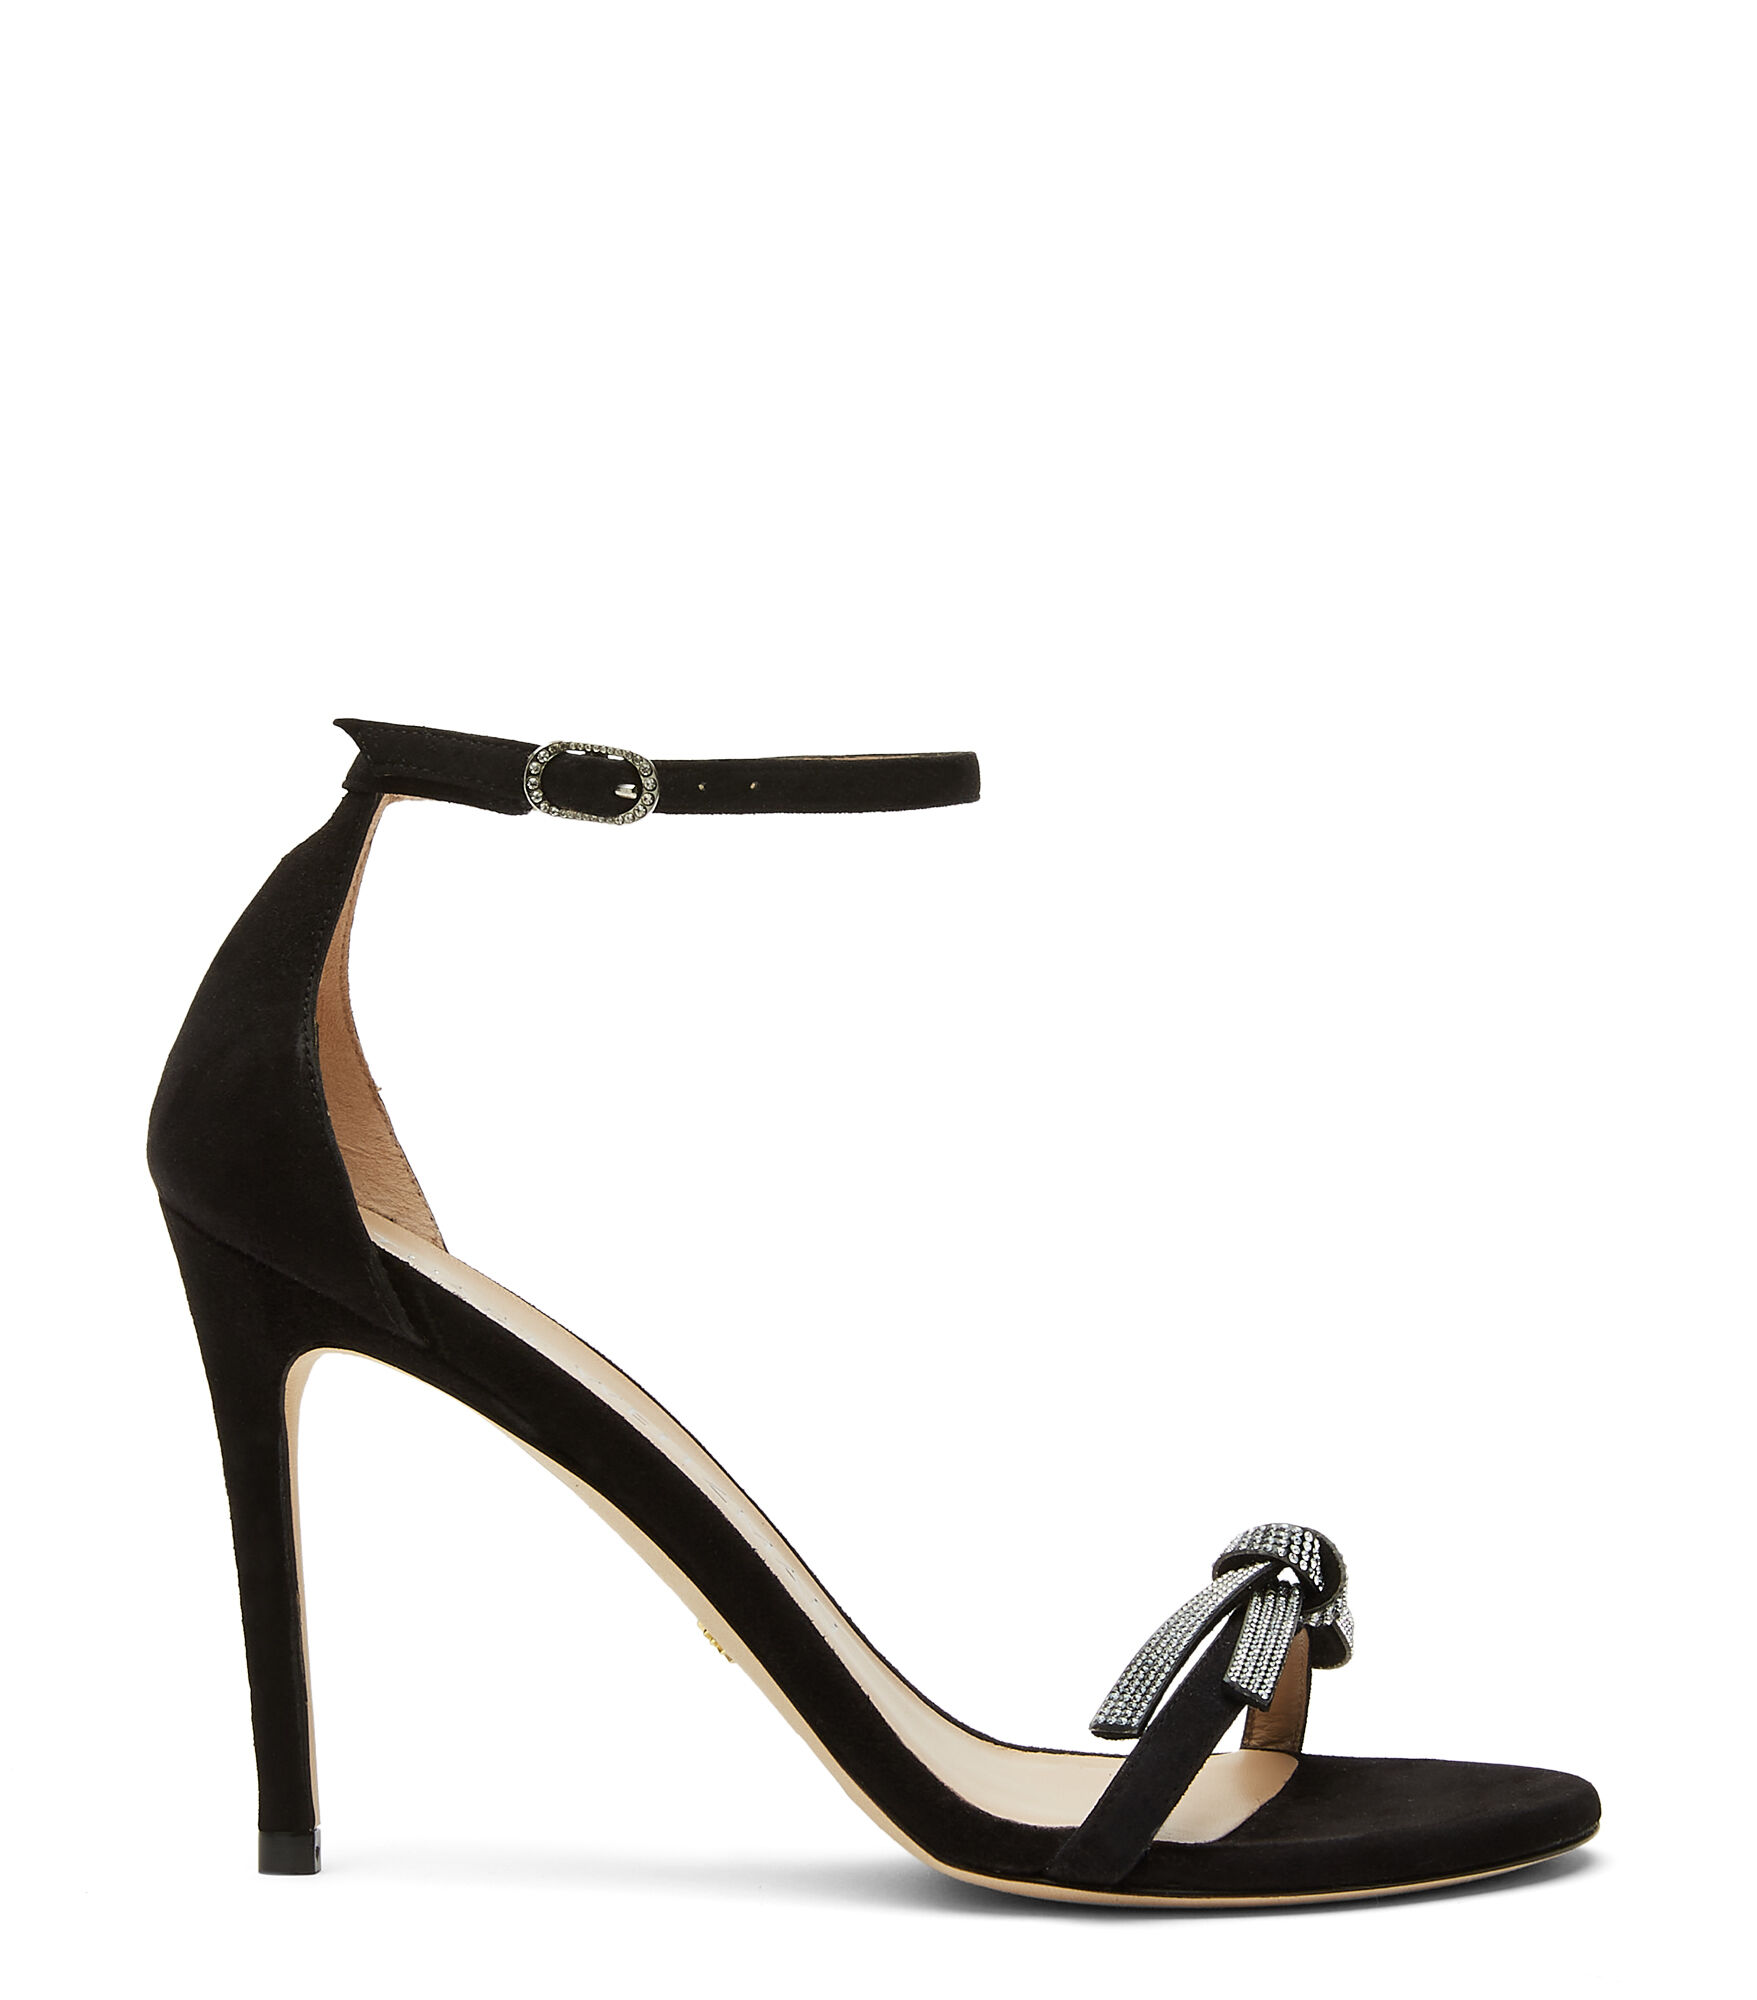 Femme Chaussures Chaussures à talons Sandales à talons Sandales Nunaked 65 mm en cuir verni Cuir Stuart Weitzman en coloris Noir 